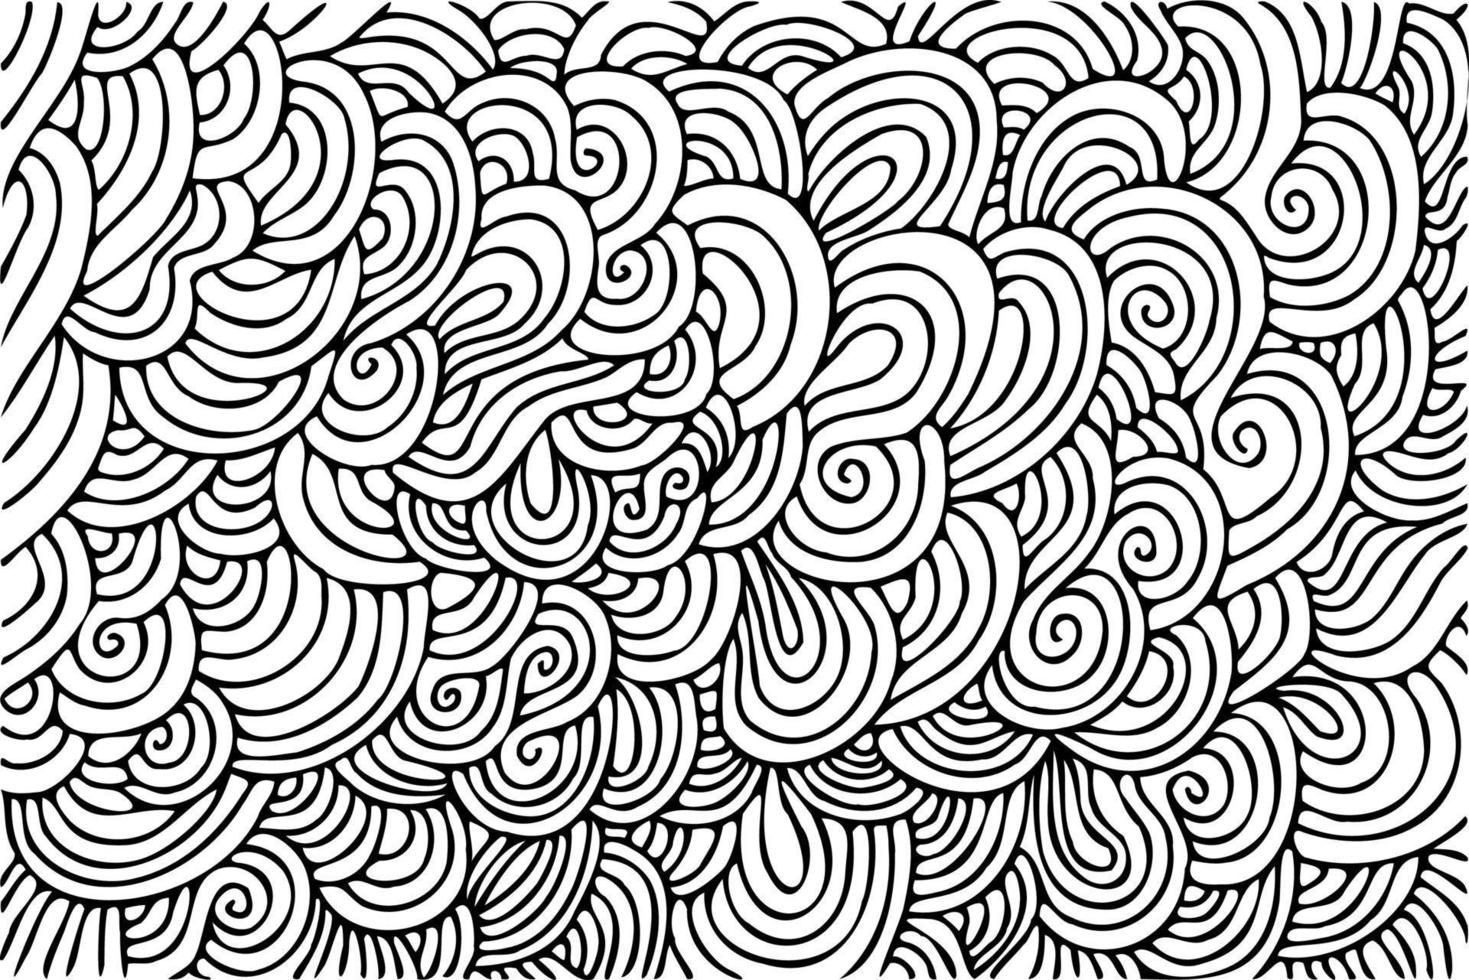 geschweifte Linien, abstrakte Kunst Hintergrund. zusammengerollte Striche in Schwarz und Weiß. wirbel und wirbel, halbkreise, linearer vektormusterhintergrund vektor